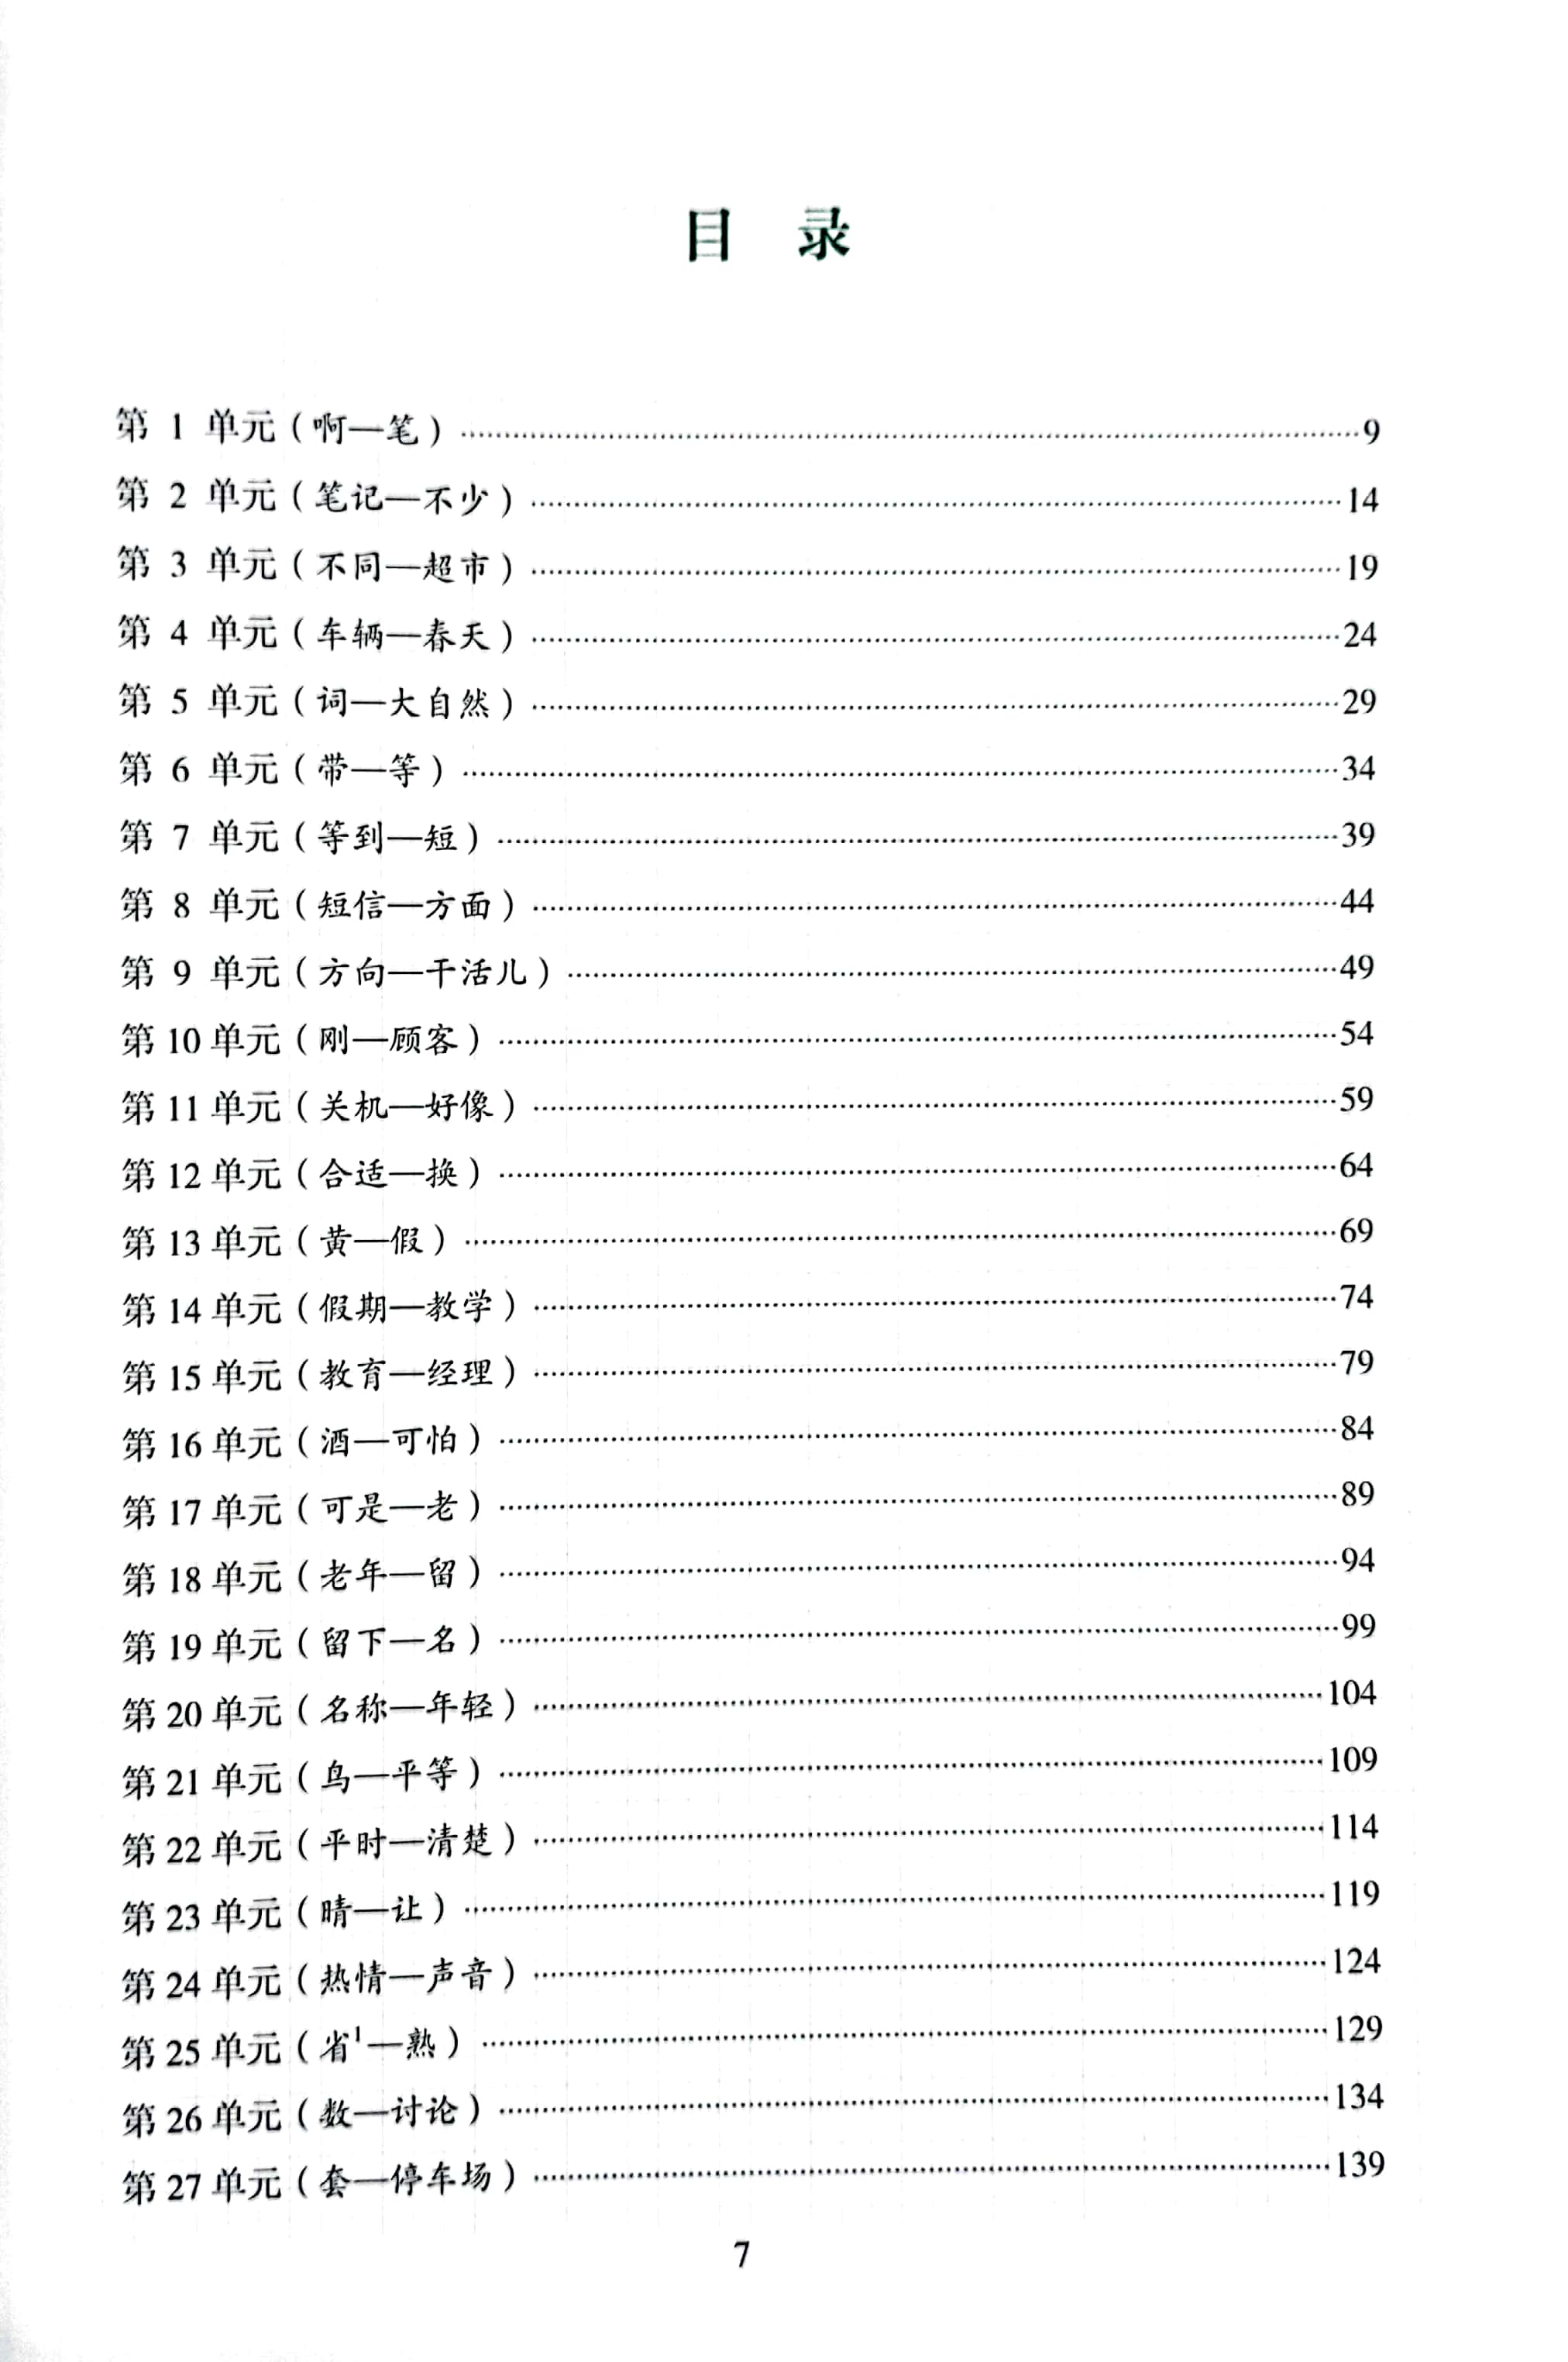 Tiêu Chuẩn Các Cấp Độ Tiếng Trung Trong Giáo Dục Tiếng Trung Quốc Tế - Giáo Trình Luyện Và Nhớ Nhanh Từ Vựng Tiếng Trung - Cấp Độ 2 PDF